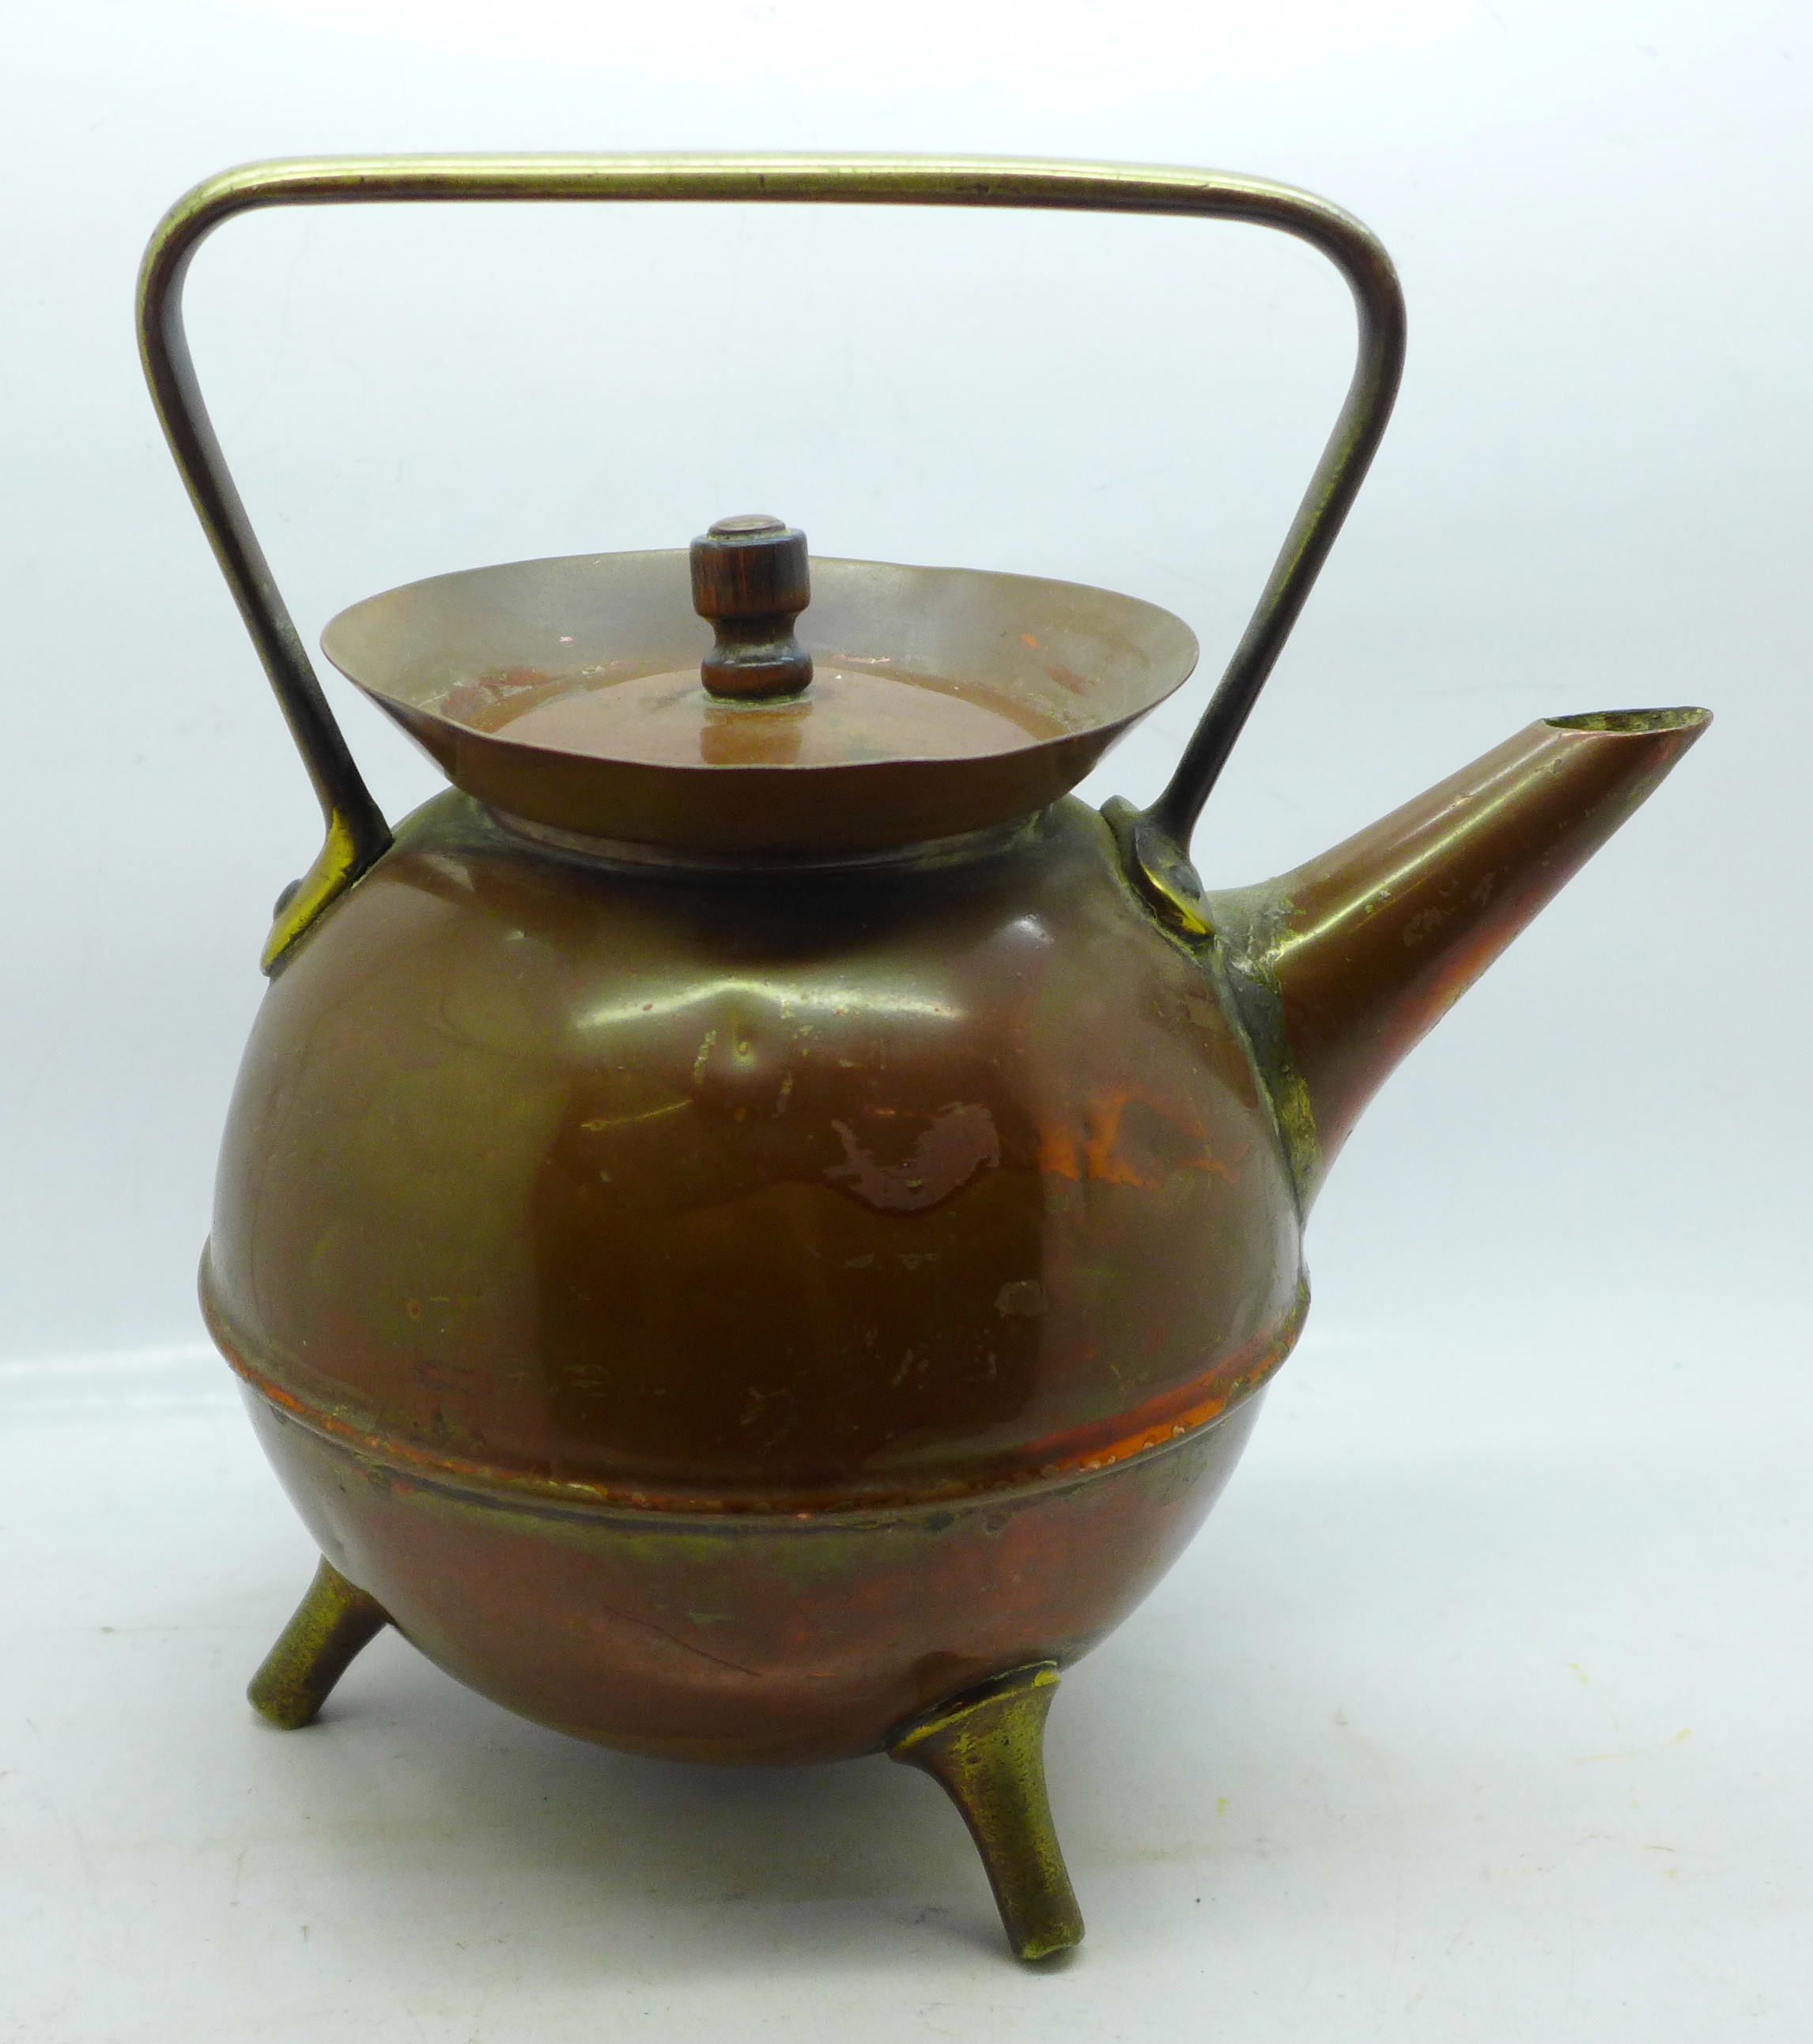 A Christopher Dresser Benham & Froud copper kettle